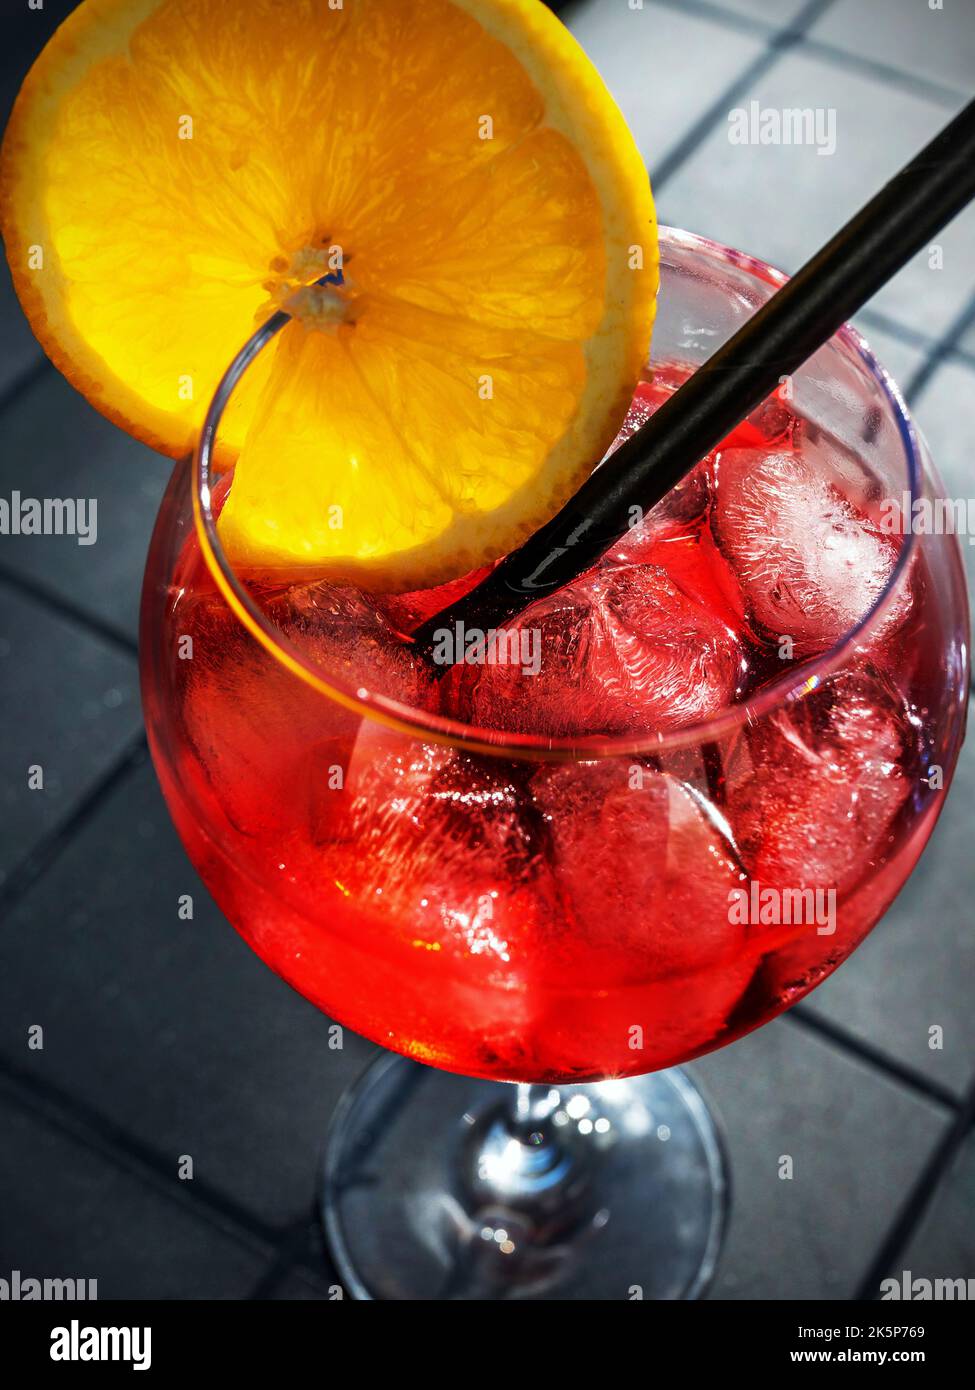 Sommercocktail, rotes italienisches alkoholisches Getränk, Getränk mit Eis, Orange und Stroh in Scheiben geschnitten, Nahaufnahme. Stockfoto